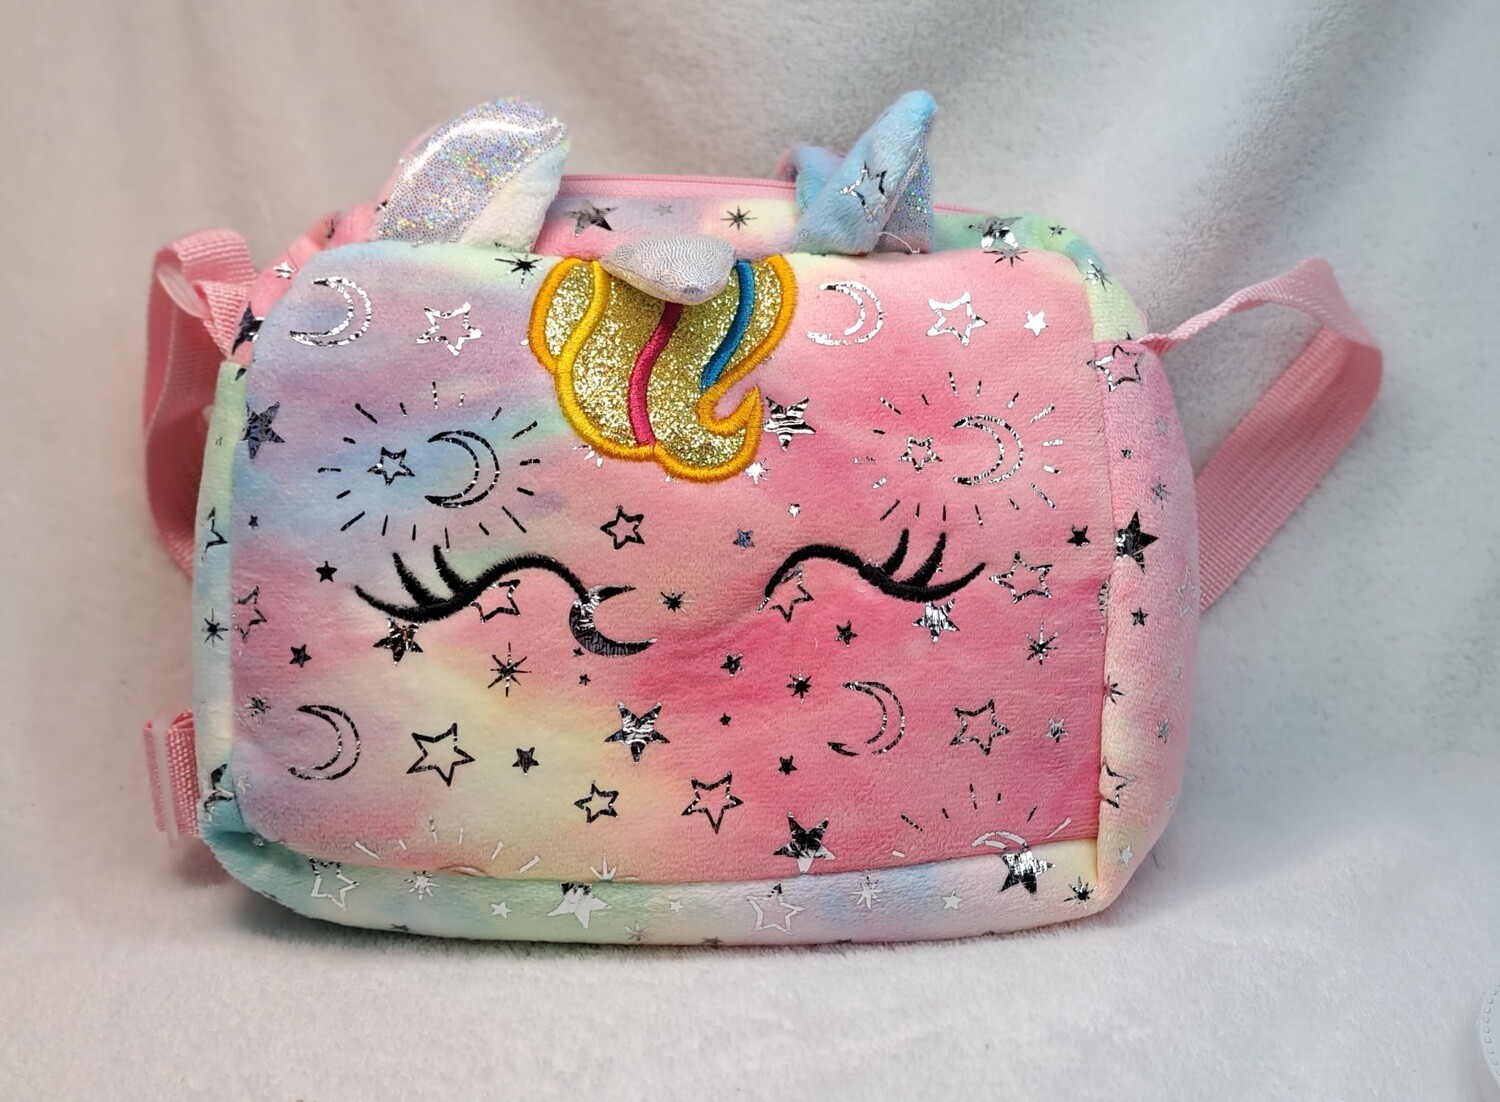 Unicorn Handbag